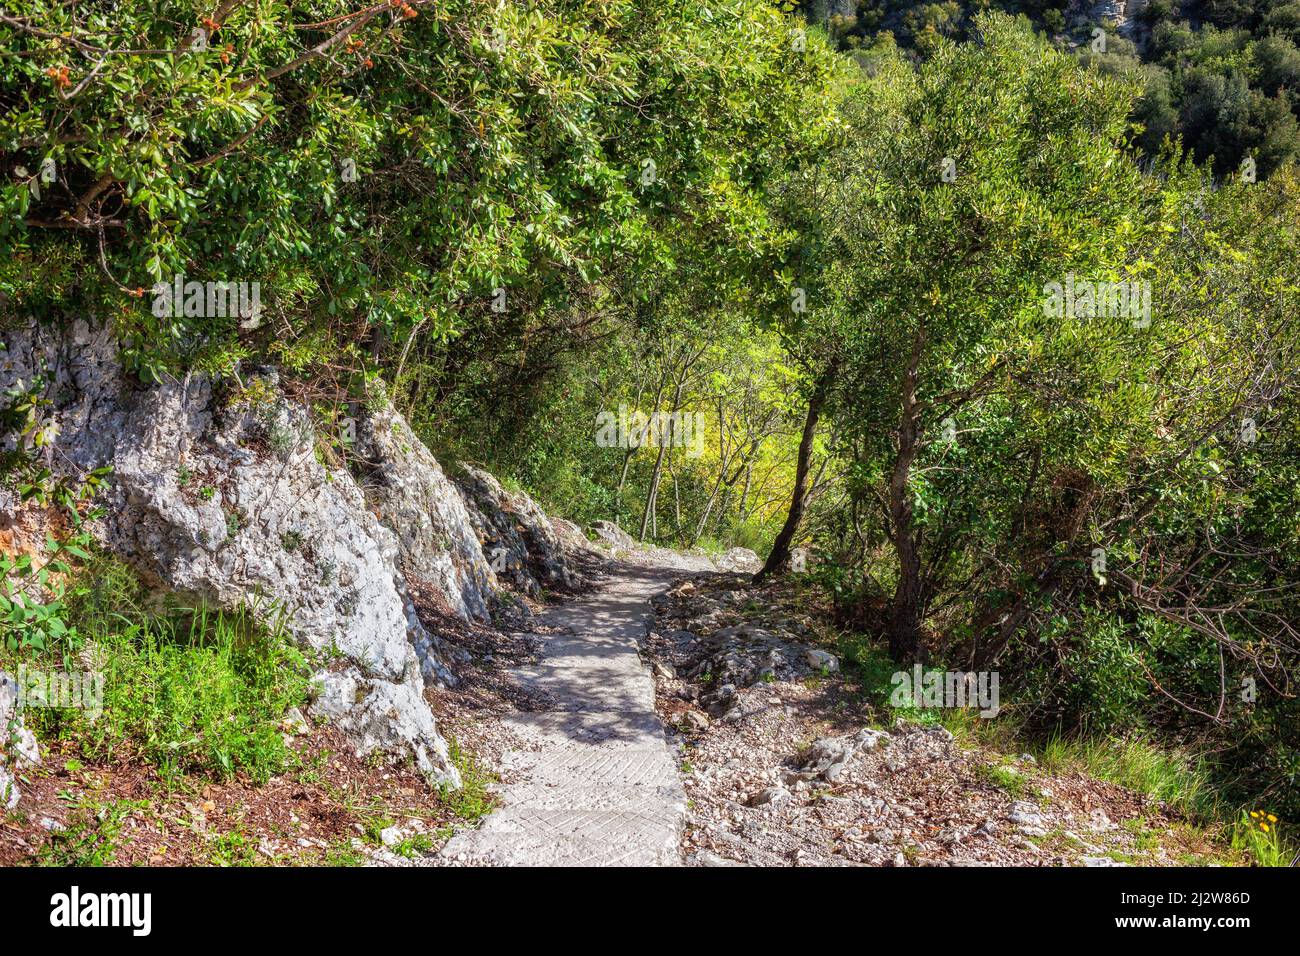 Sentiero Nietzsche in Francia, sentiero costiero sulla Costa Azzurra - Costa Azzurra, regione Alpes Maritimes. Foto Stock